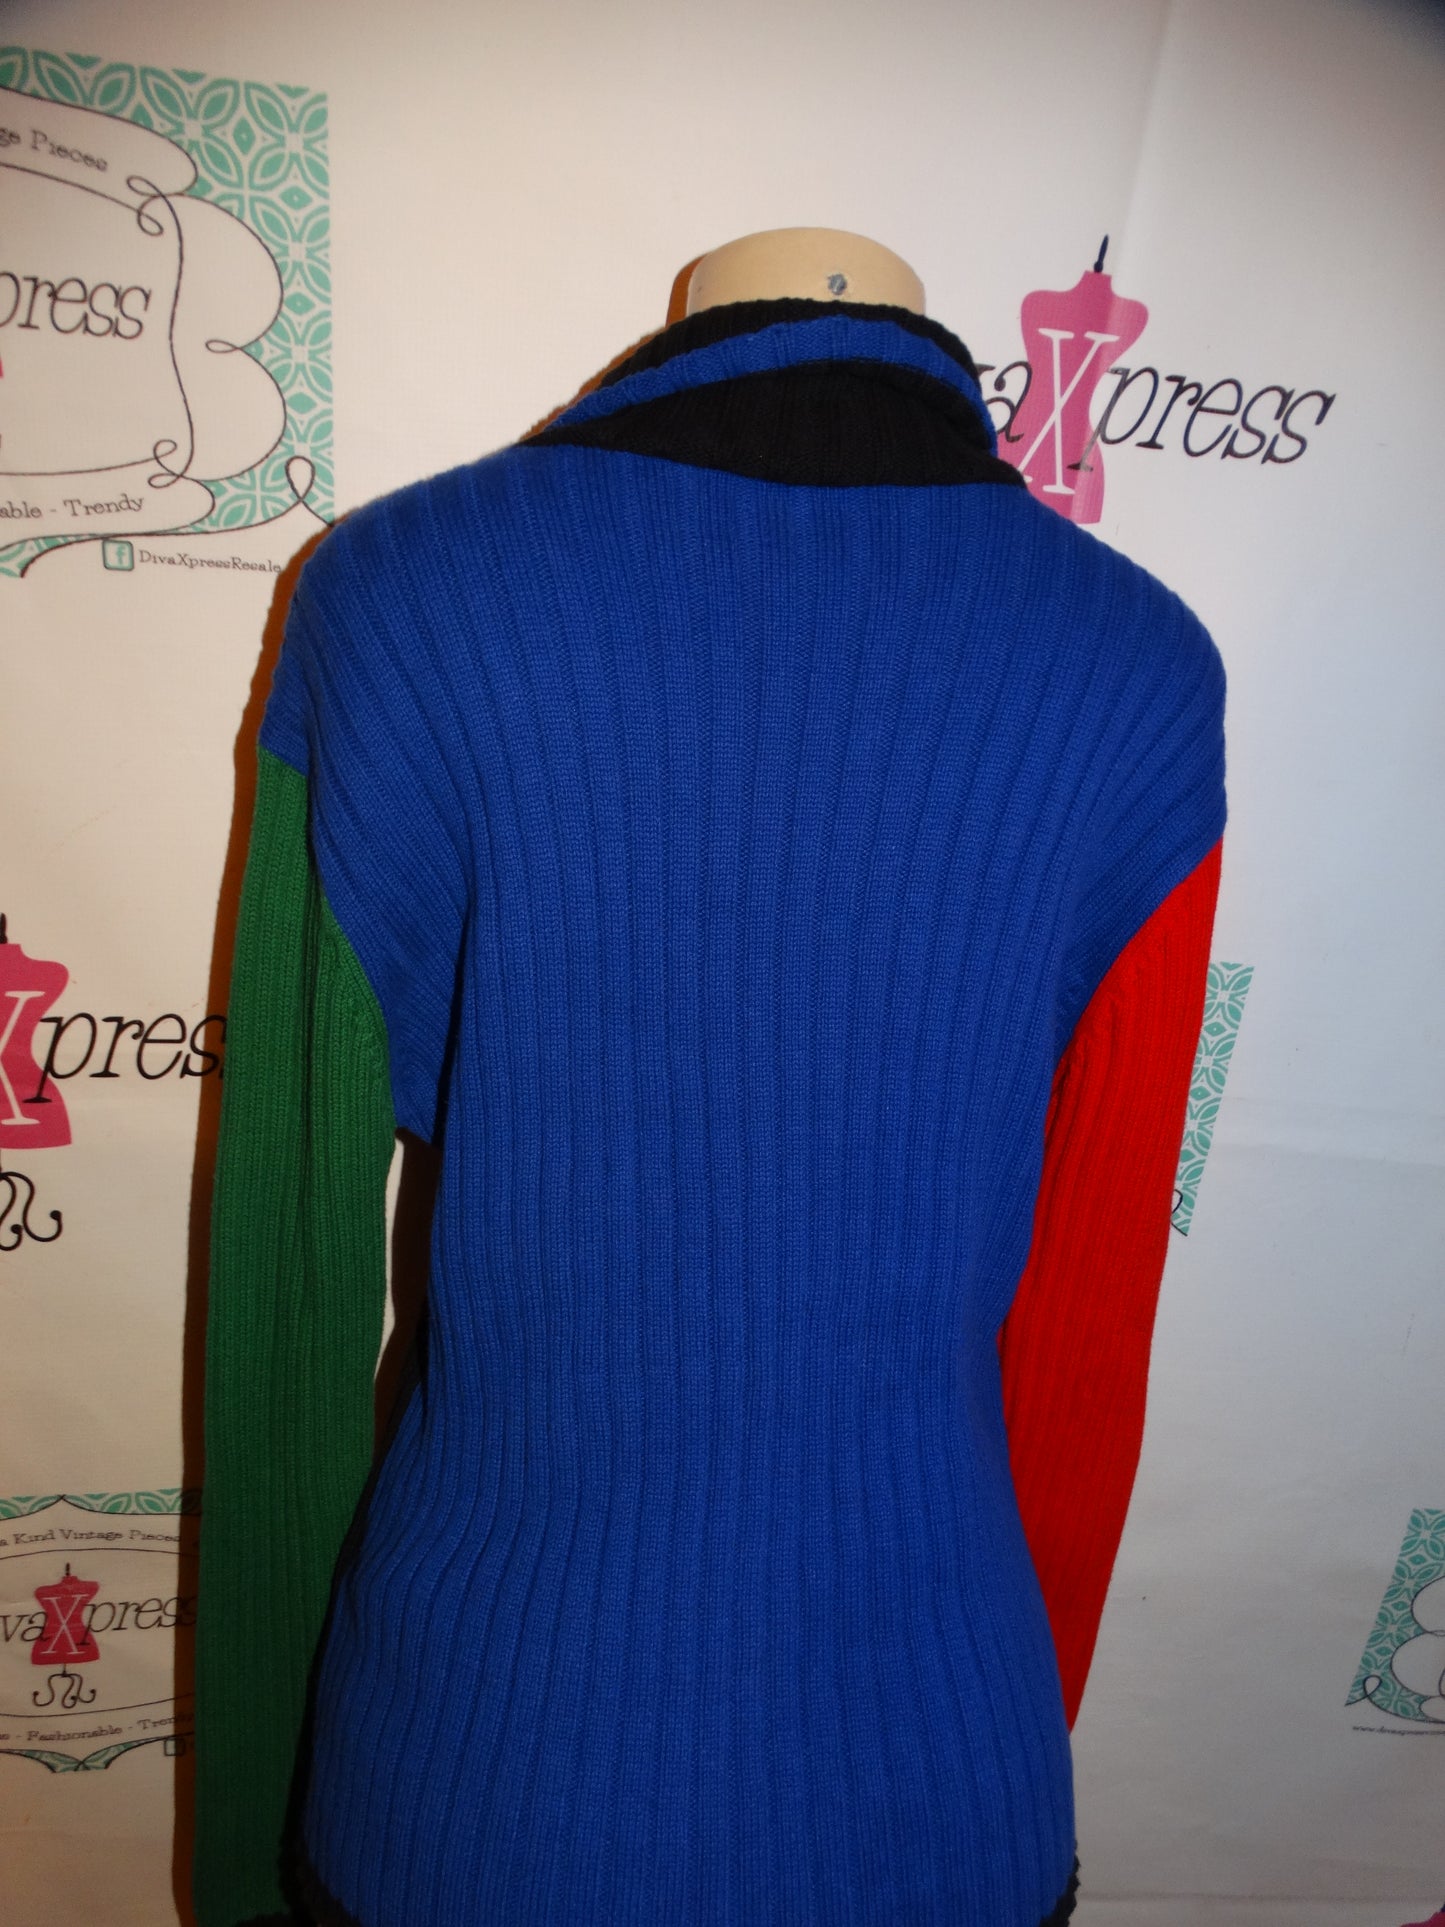 Vintage Tommy Hilfiger Black Colorful Sweater Size L